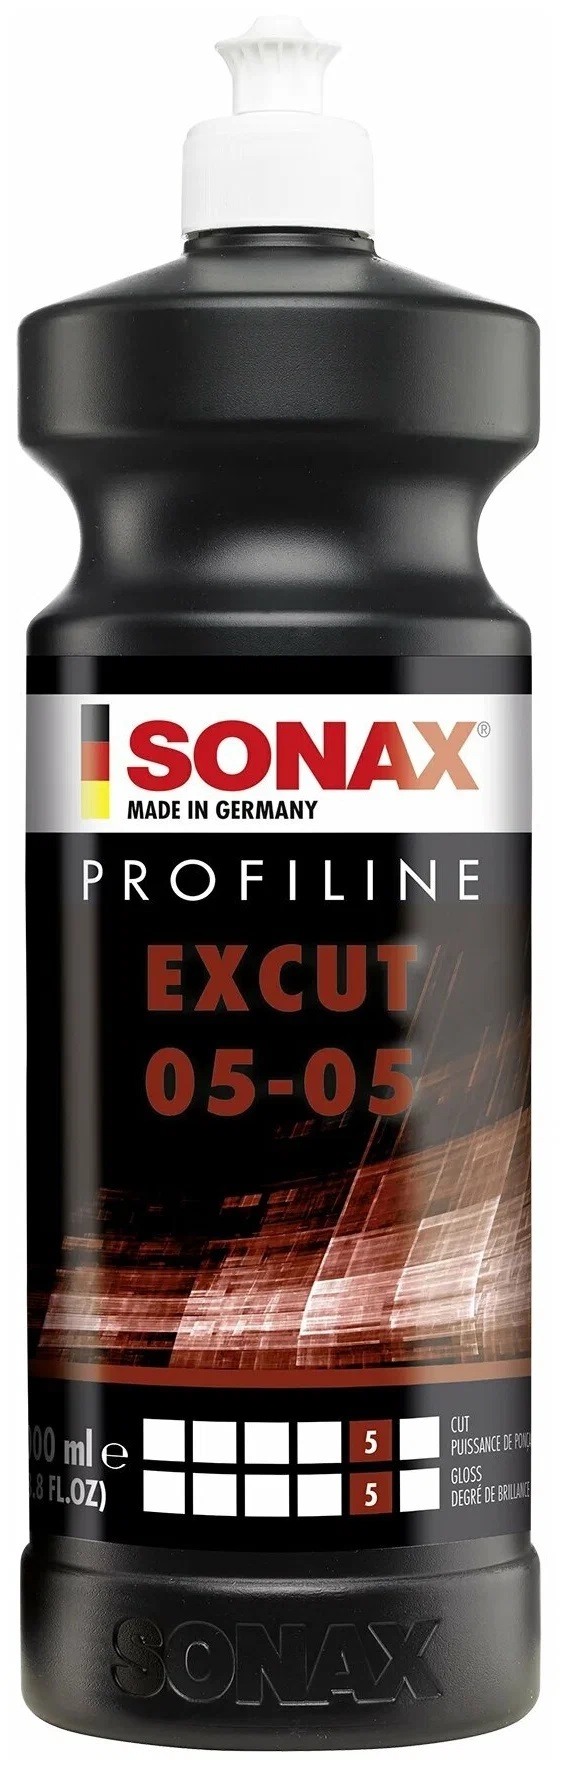 Абразивный полироль Sonax, ProfiLine ExCut, 05-05, для орбитальных машинок 1л (245300)